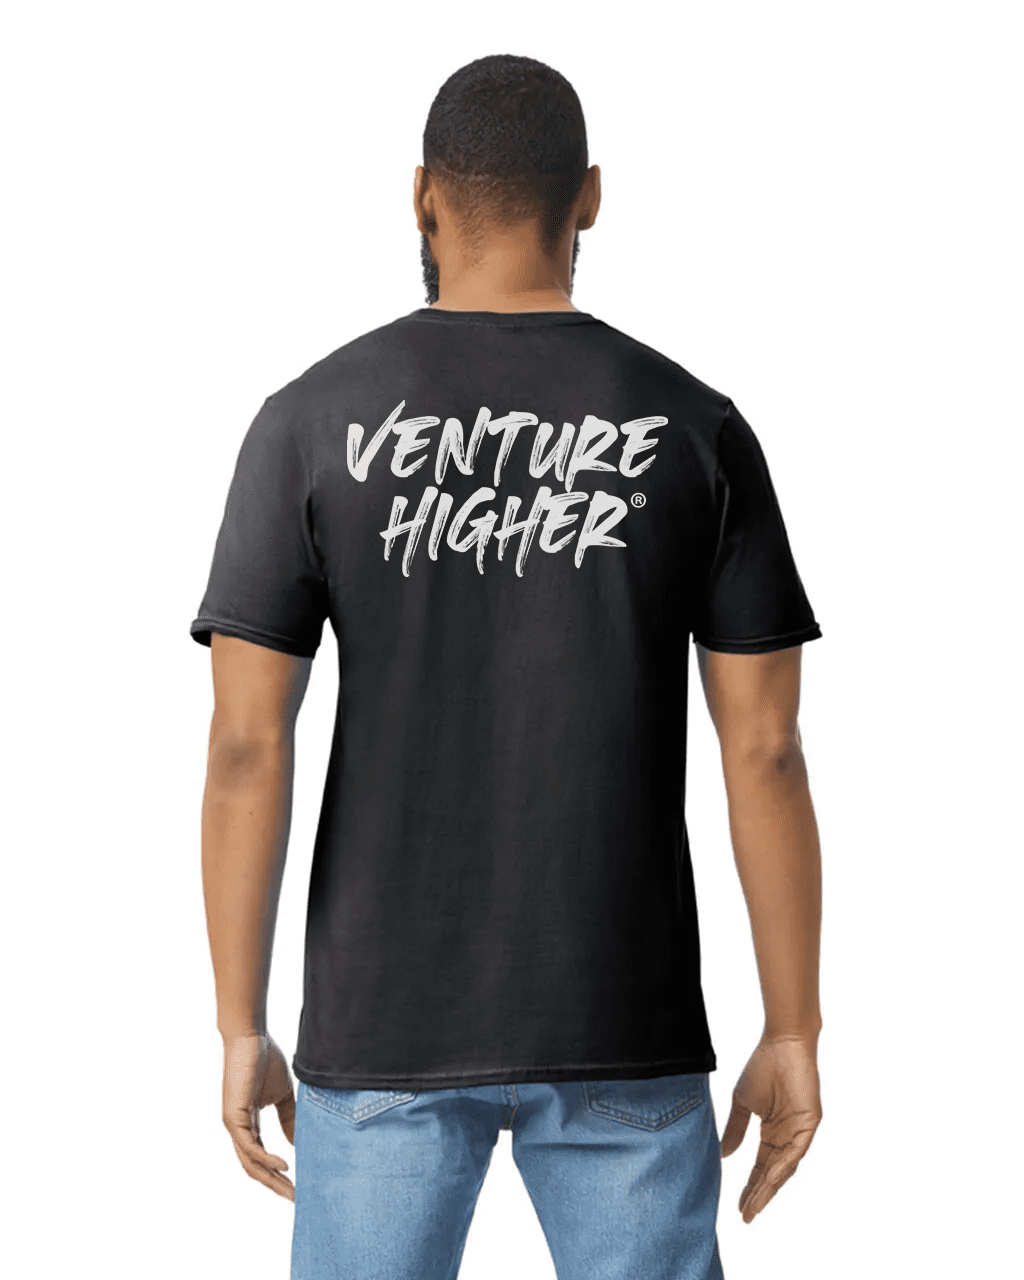 Vuber Venture Higher T-Shirt